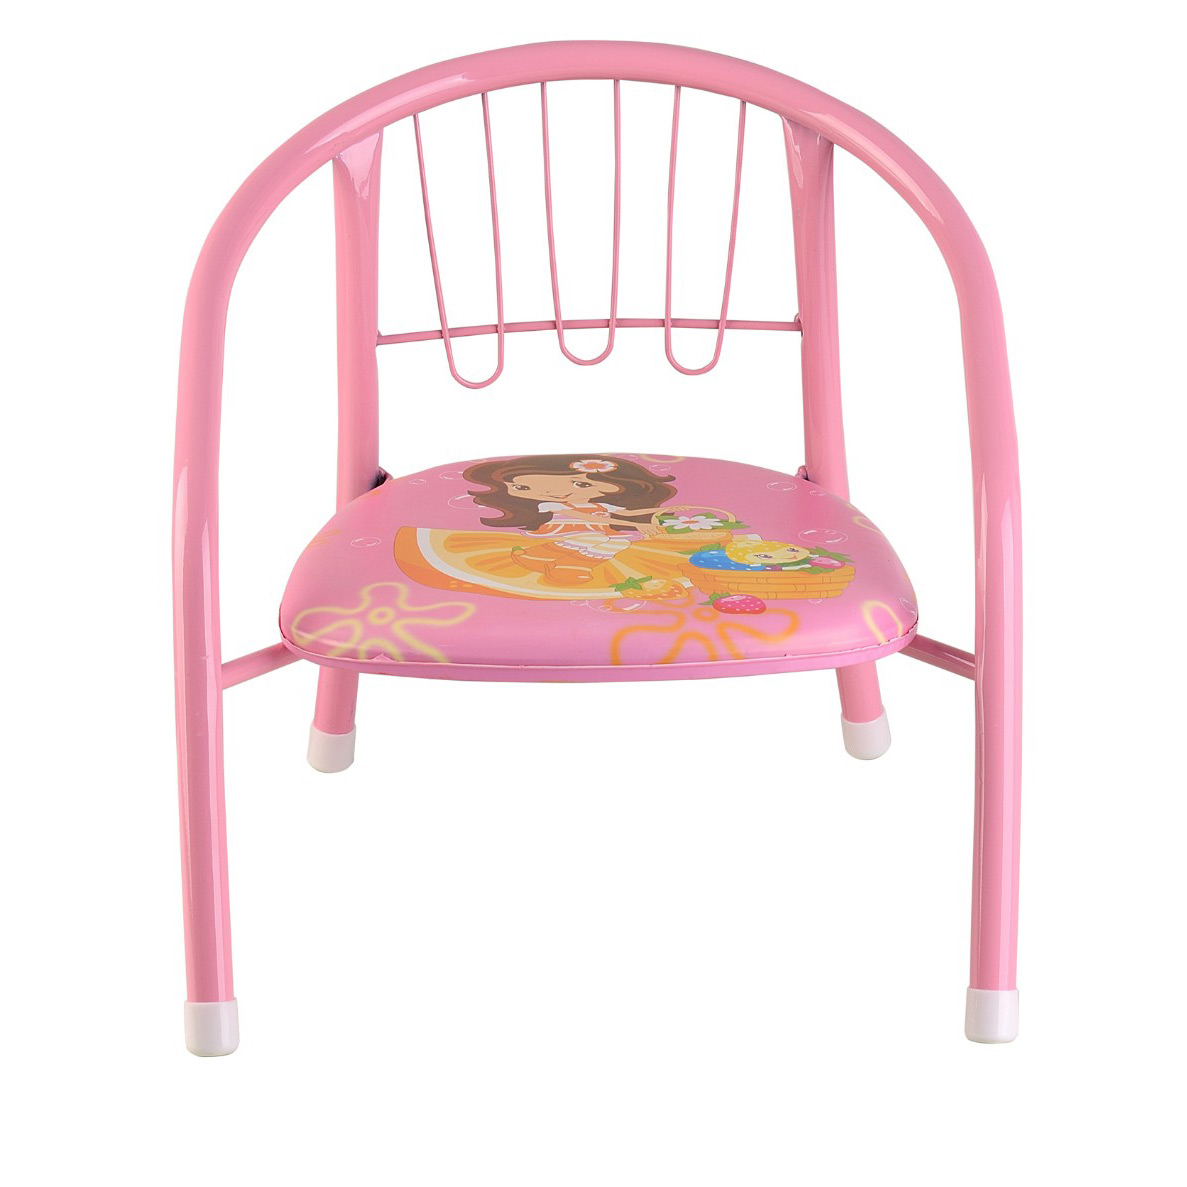 Παιδικά Αγόρια Κορίτσια Μεταλλικός Σκελετός Squeaky Chair Indoor Outdoor